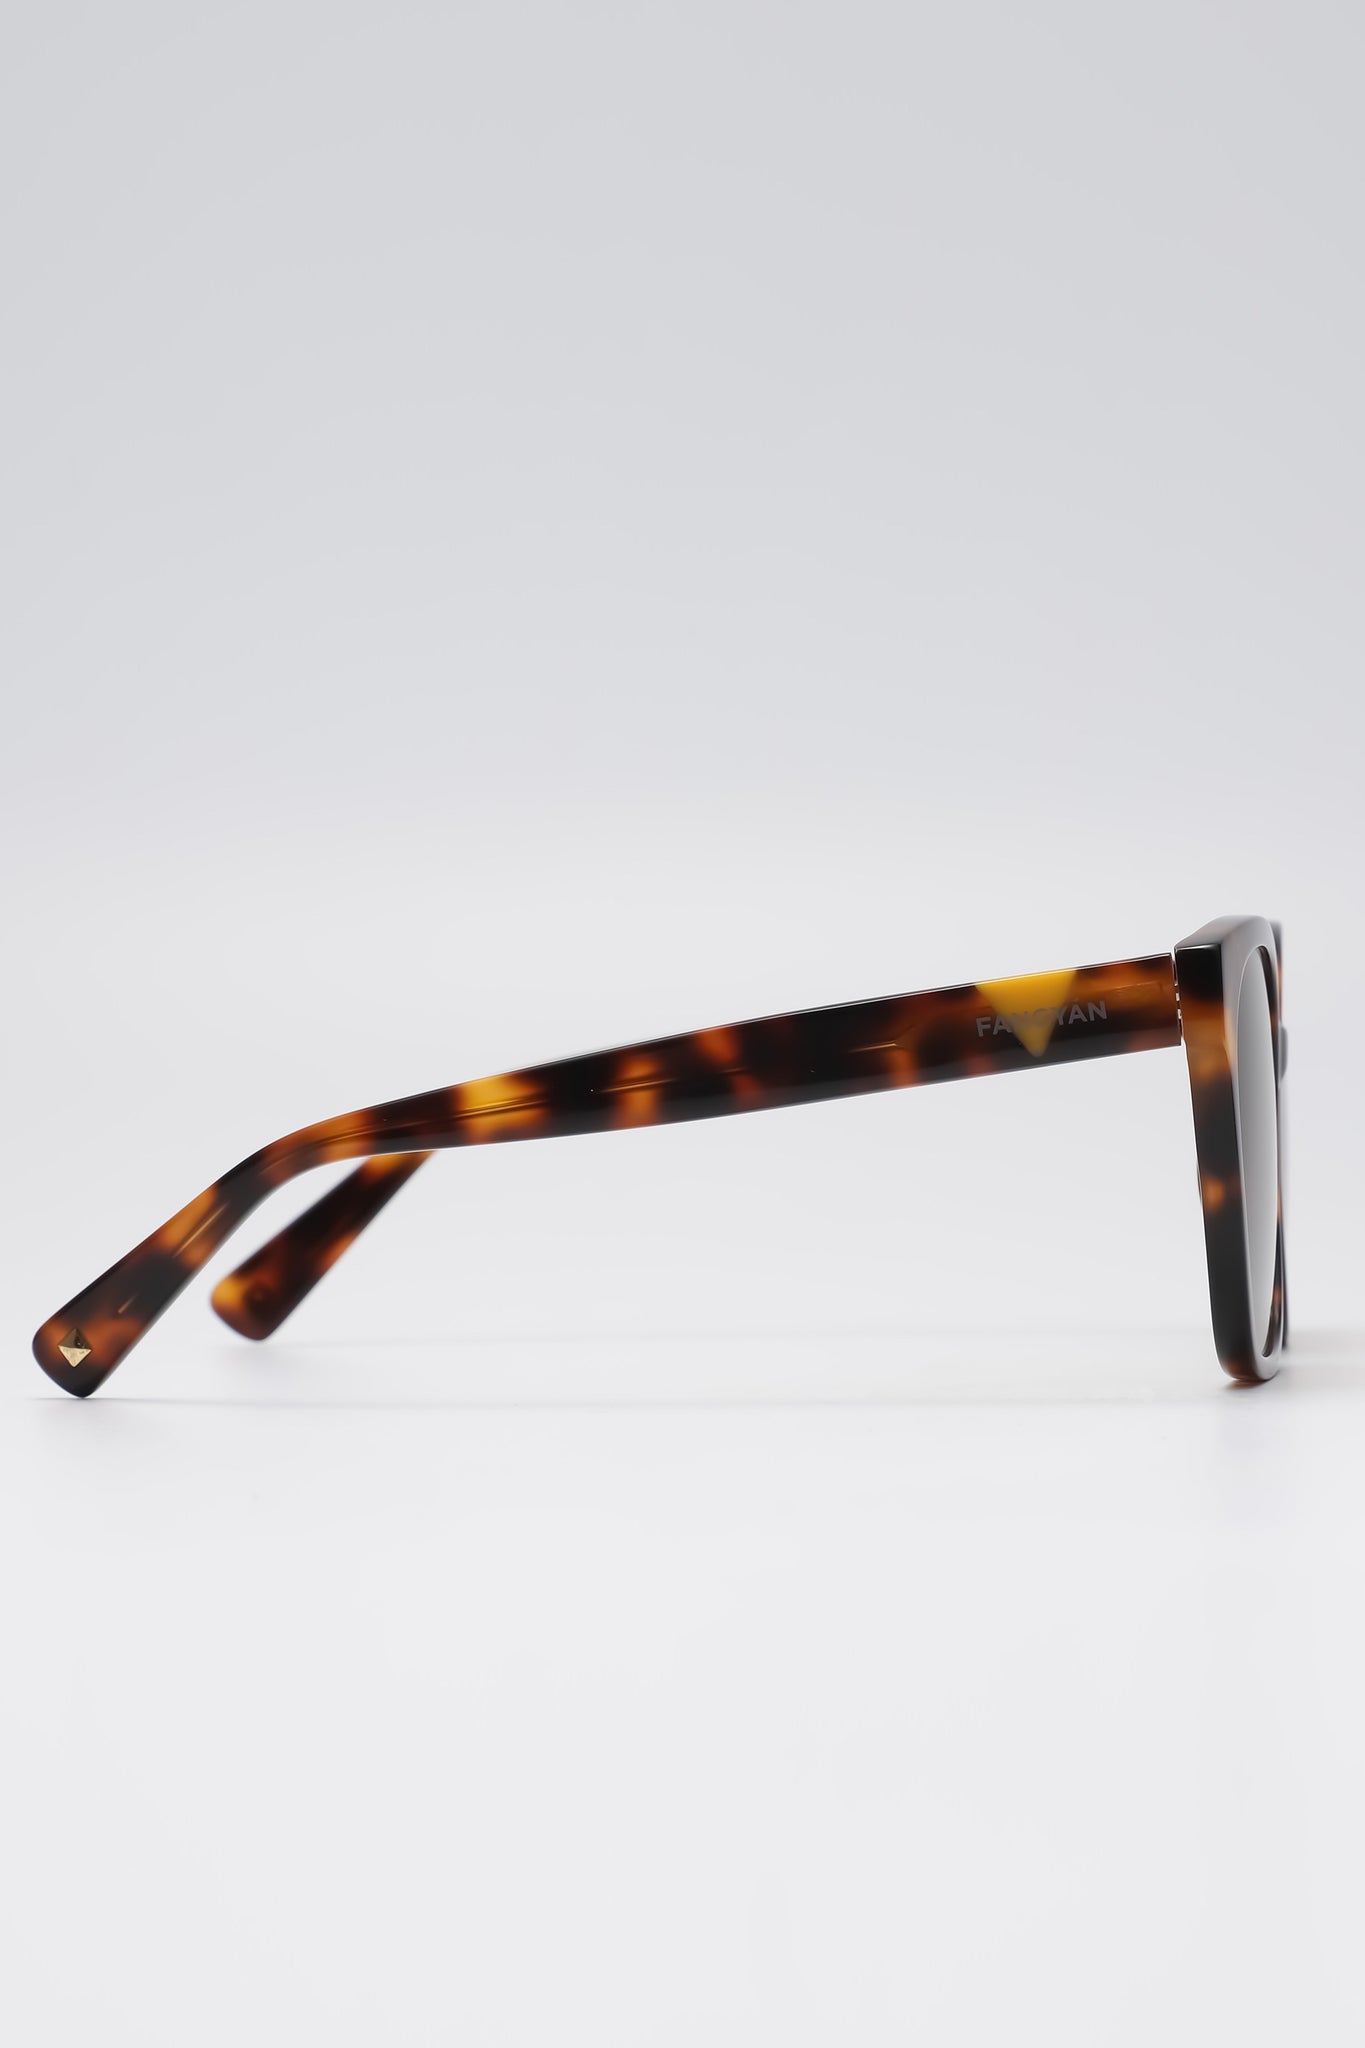 Fangyan | Rectangular Tortoiseshell Brown Sunglasses